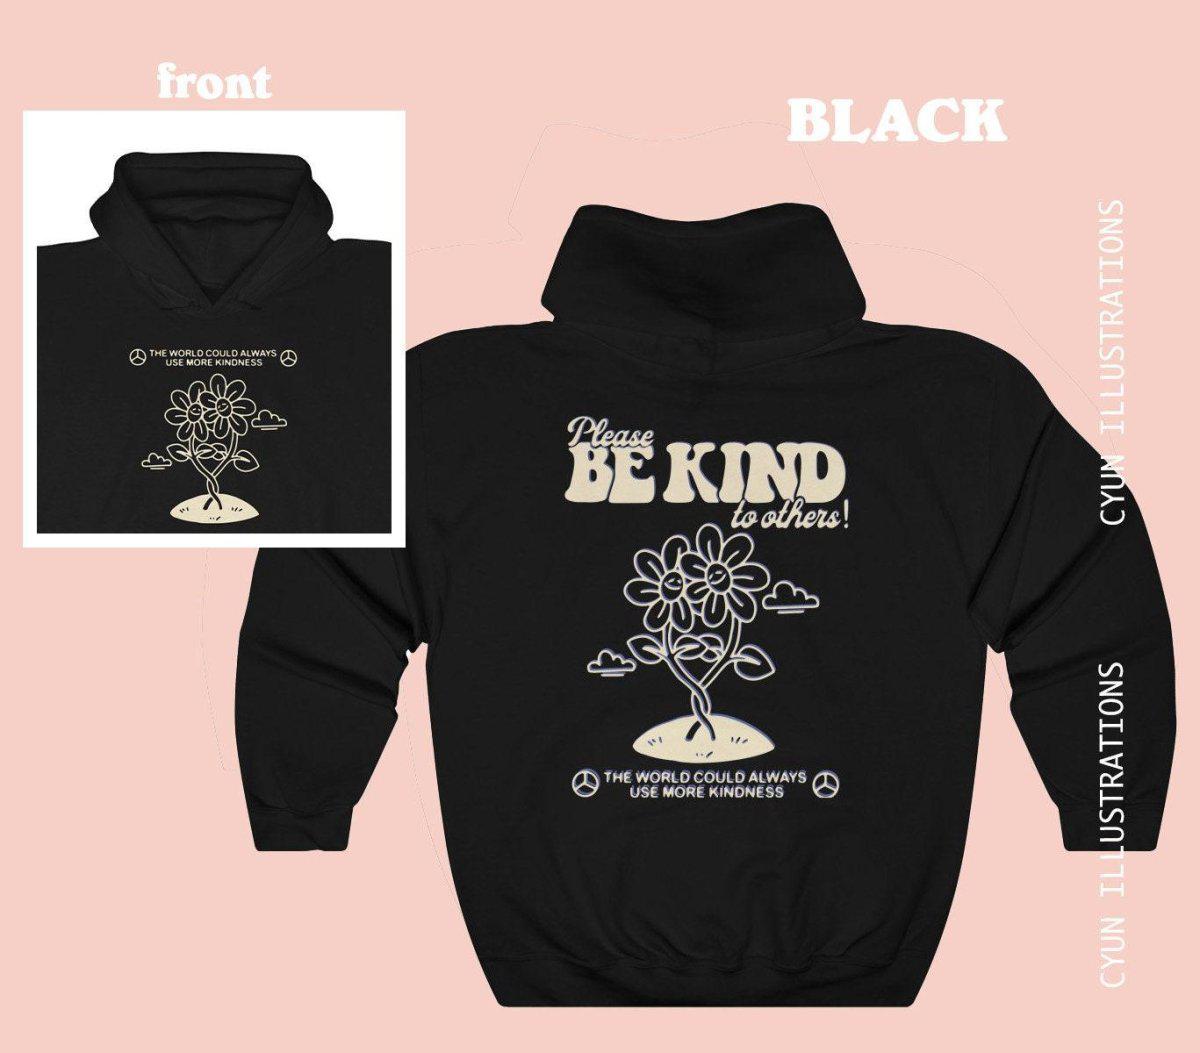 'Be Kind' Cute Trendy Hoodie - Sweatshirts & Hoodies - Kinder Planet Company